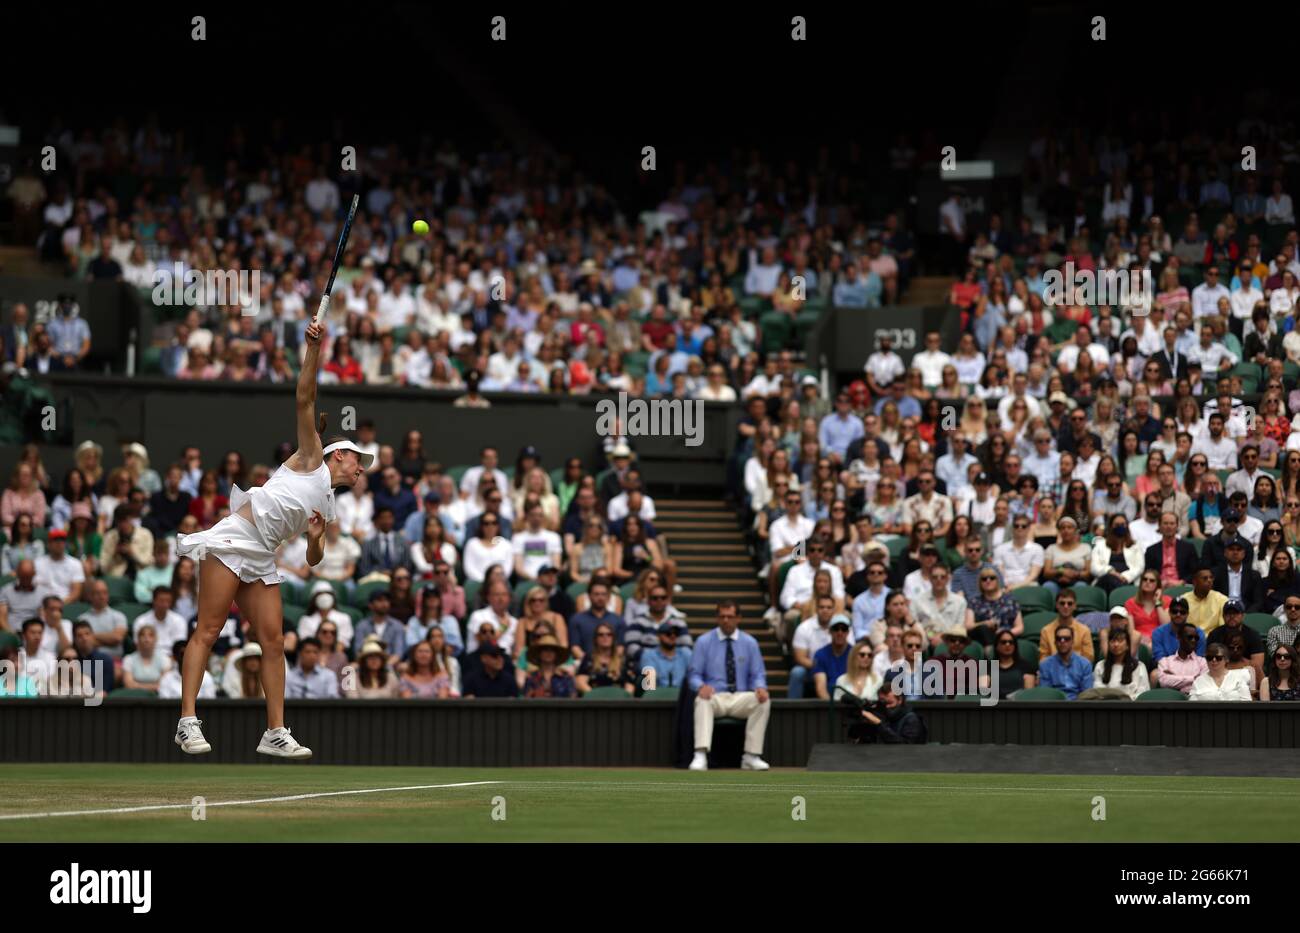 Kaja Juvan in Aktion während ihres Matches in der dritten Runde der Damen gegen Coco Gauff am sechsten Tag von Wimbledon im All England Lawn Tennis and Croquet Club in Wimbledon. Bilddatum: Samstag, 3. Juli 2021. Stockfoto